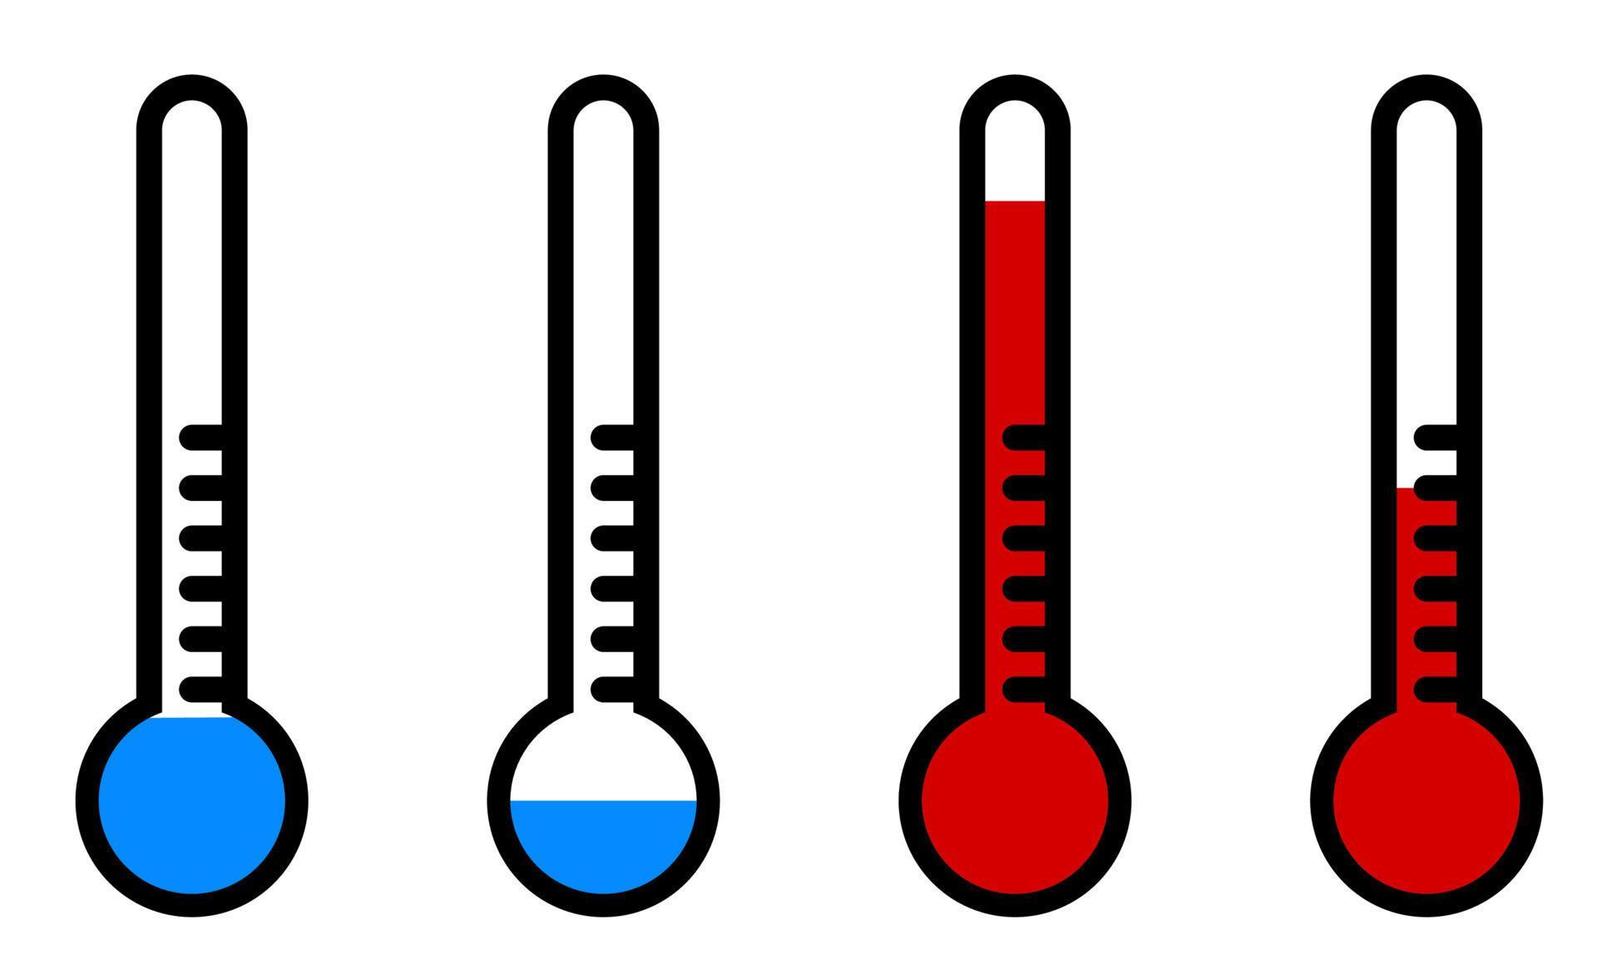 termômetro com alta e baixa temperatura. estilo de desenho animado. vetor isolado no fundo branco